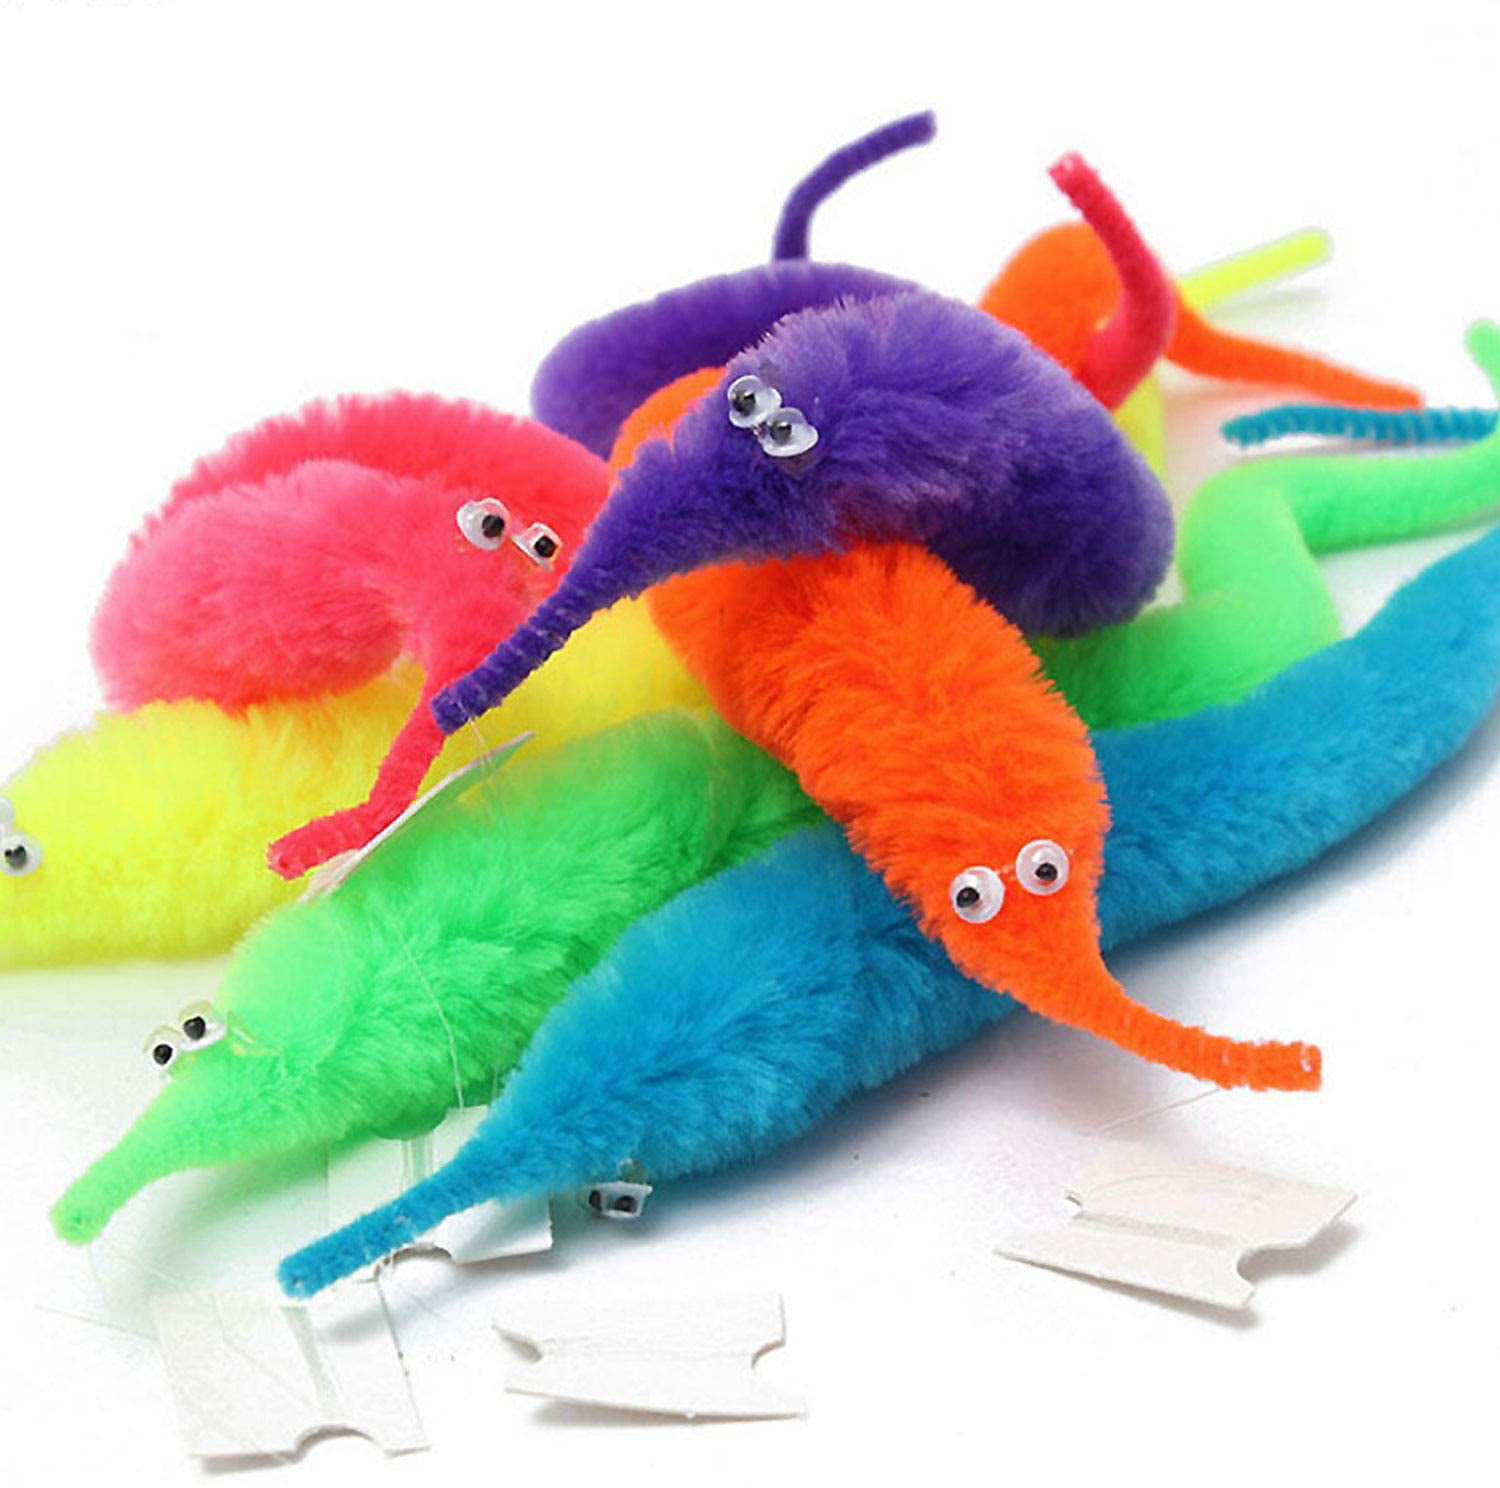 Fun Cute Twisty Trick Toys Plush Magic Worm Fuzzy Worm ChiKids Trick Toy 